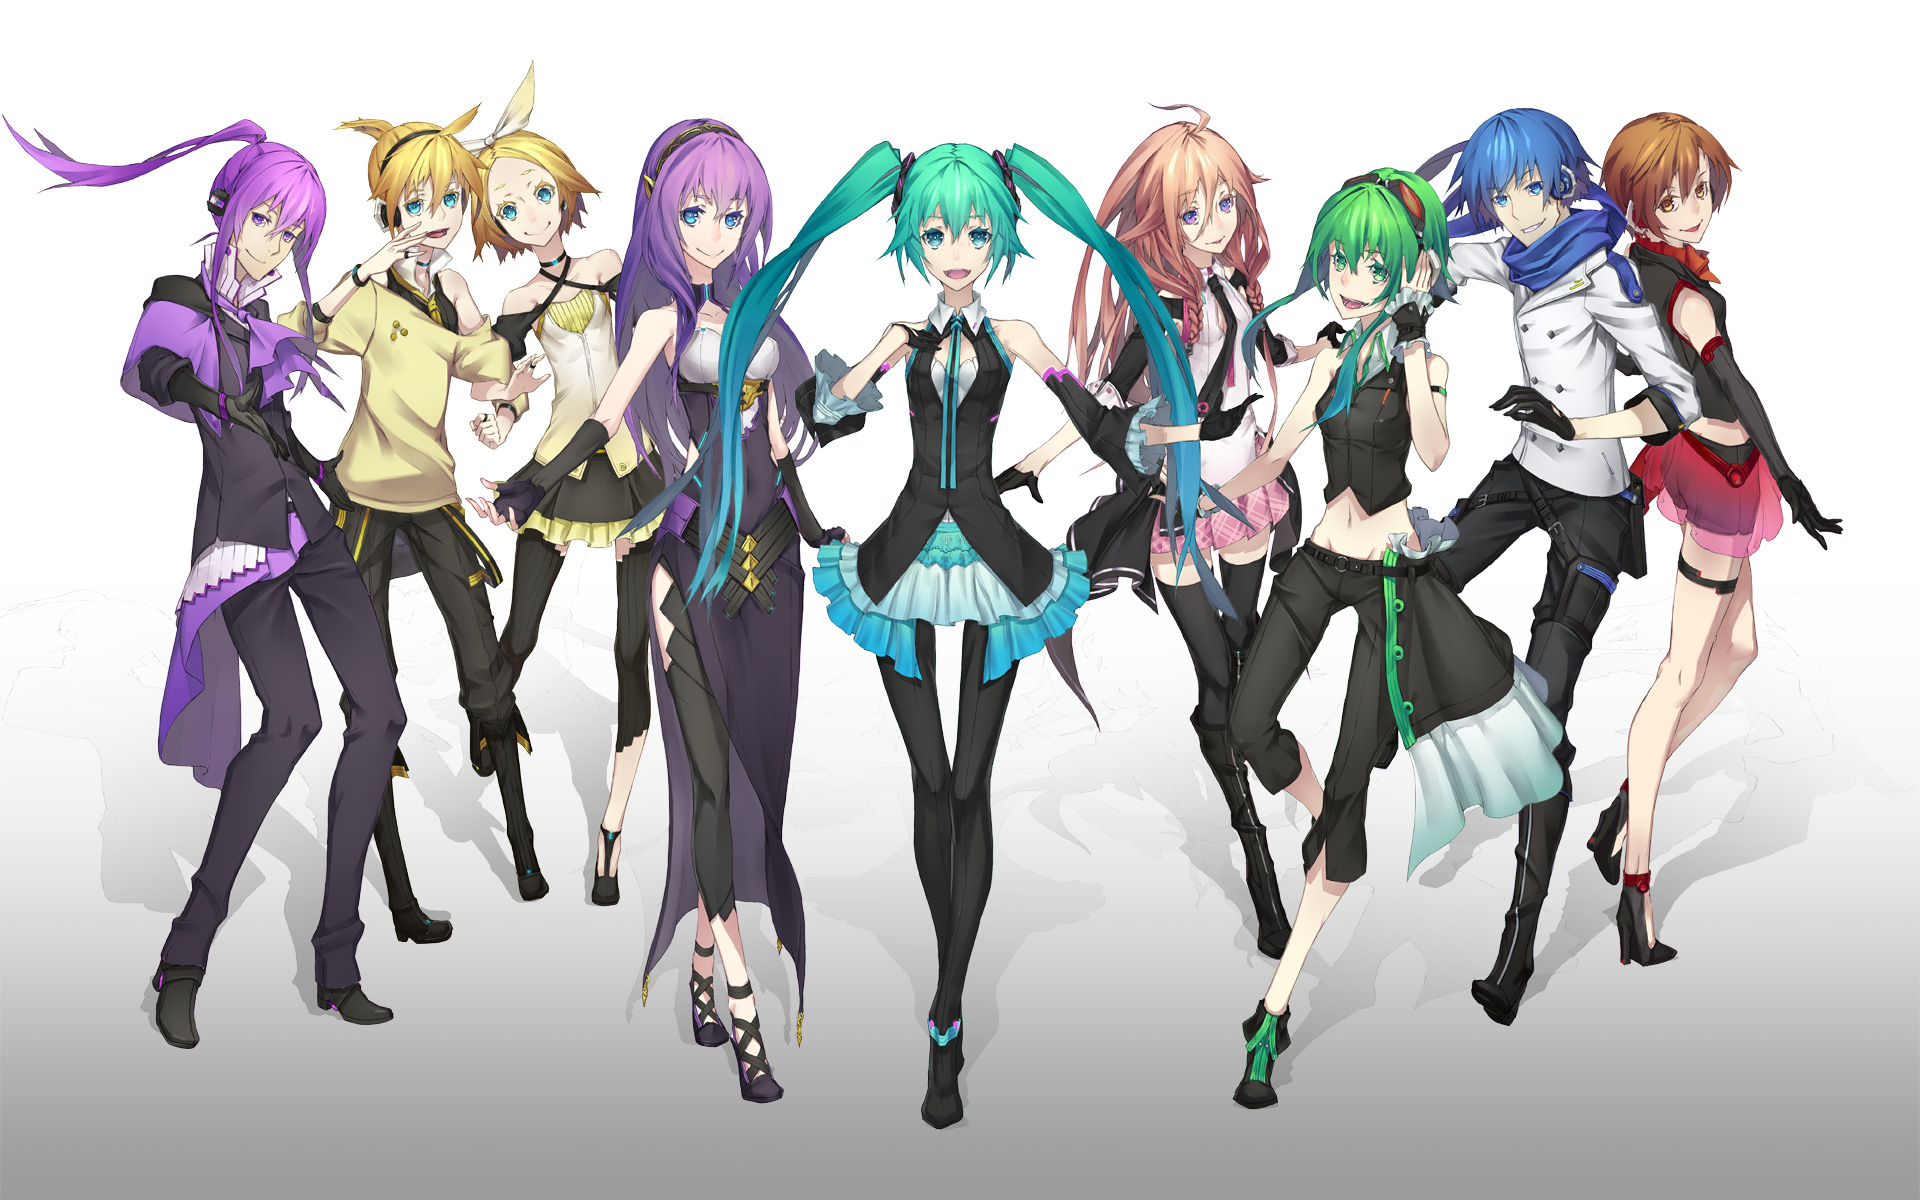 Descarga gratuita de fondo de pantalla para móvil de Vocaloid, Luka Megurine, Animado, Hatsune Miku, Rin Kagamine, Gumi (Vocaloid), Kaito (Vocaloid), Len Kagamine, Meiko (Vocaloid), Kamui Gakupo, Ai (Vocaloid).